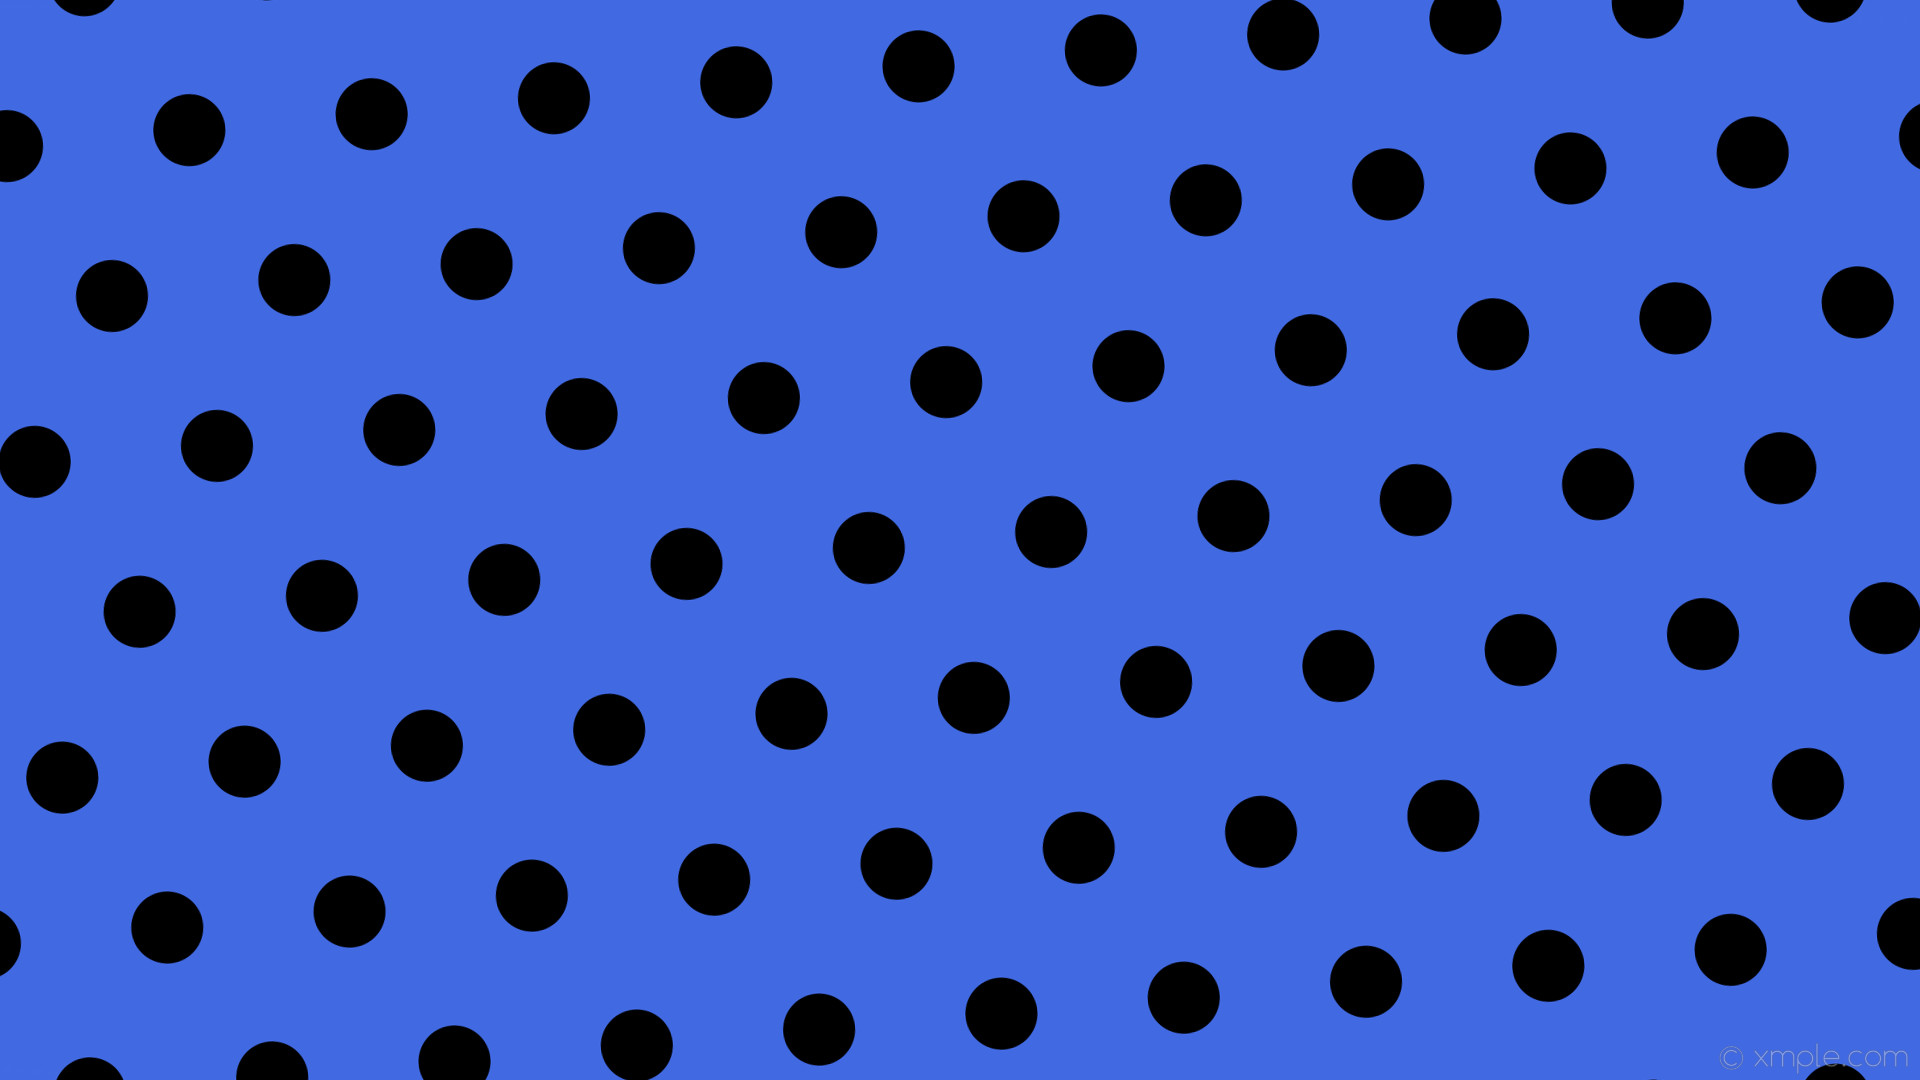 1920x1080 wallpaper blue polka dots black hexagon royal blue #4169e1 #000000 diagonal  5Â° 72px